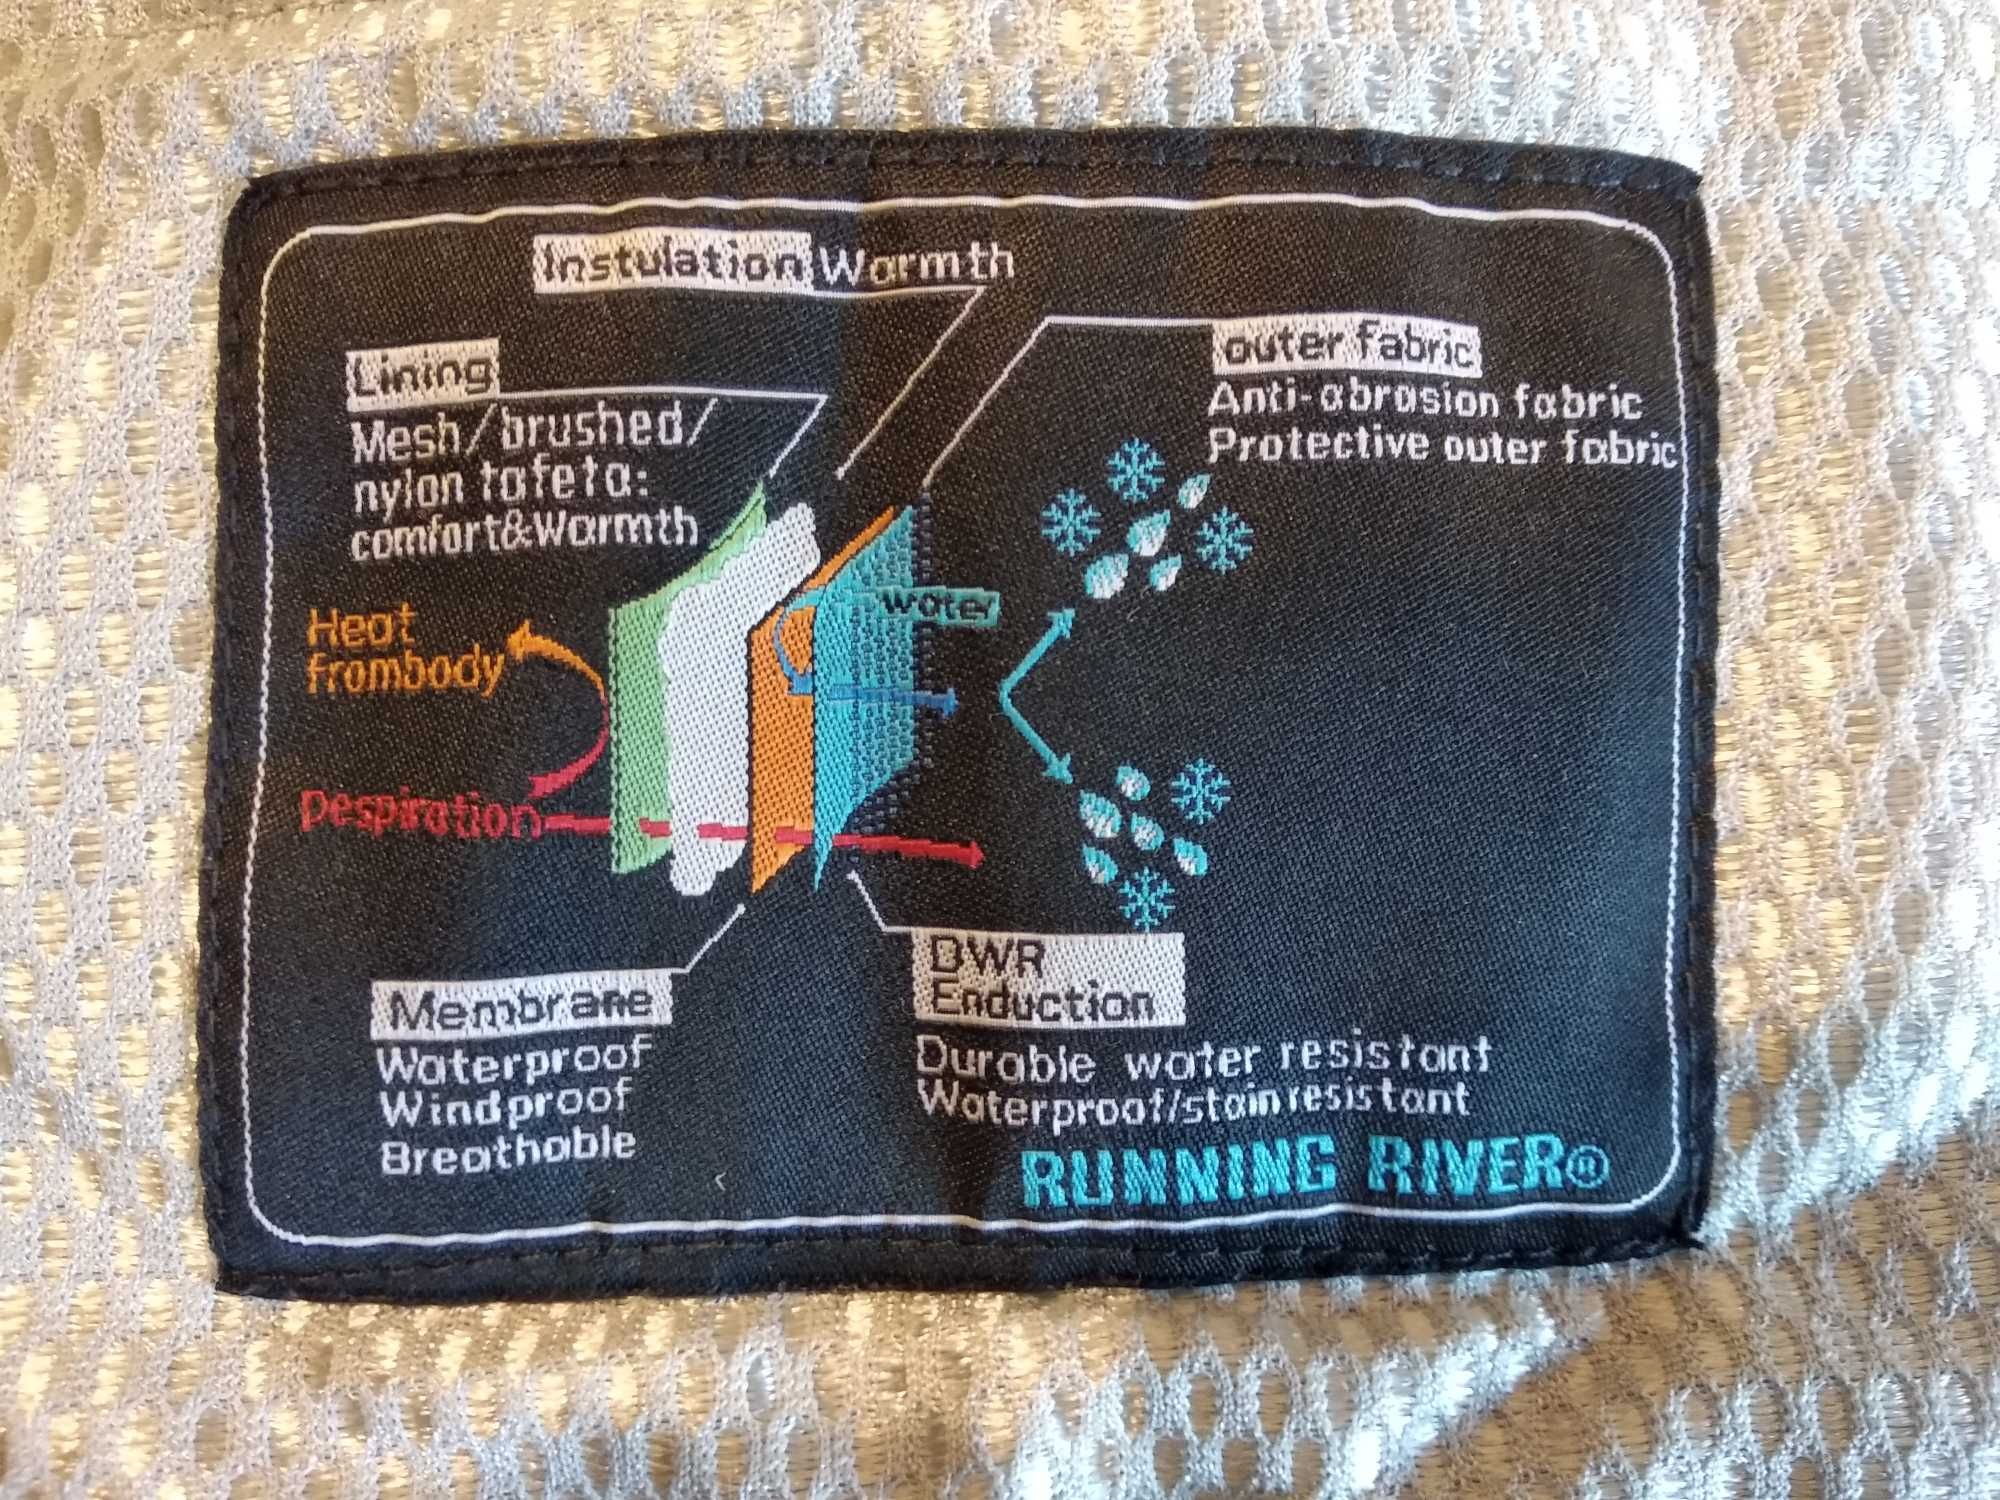 Лыжная термо куртка Running River, р. 44-46 (замеры в объявлении)